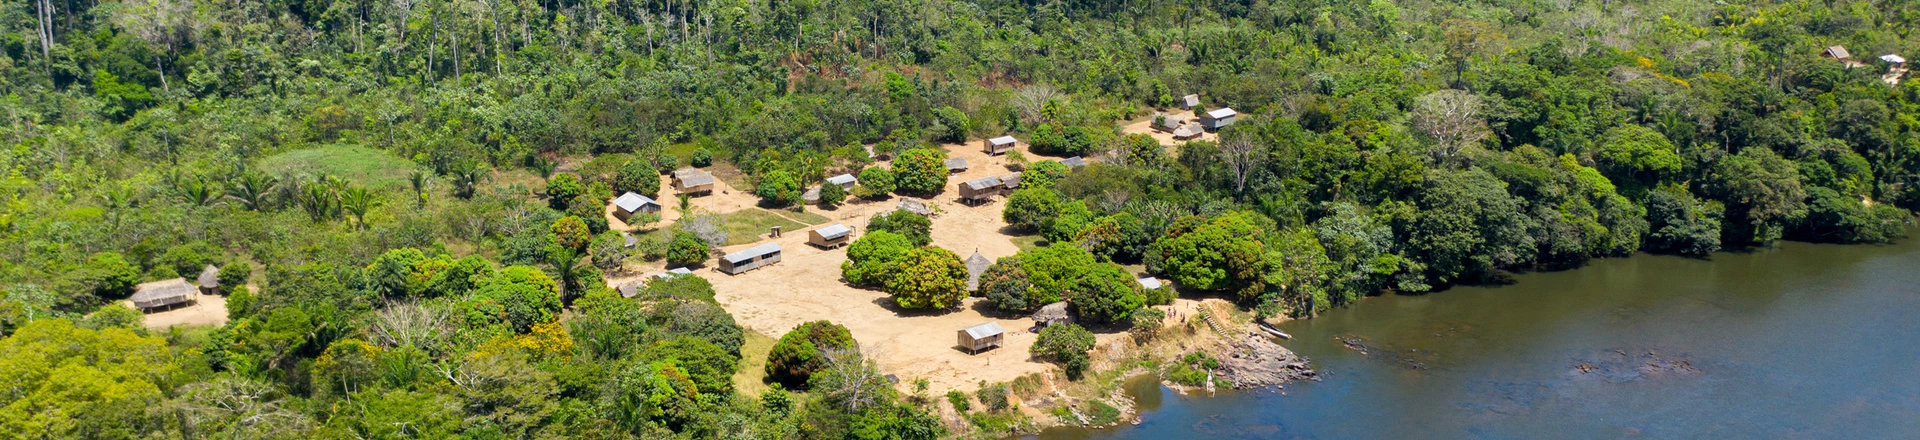 Terra indígena Tumucumaque, no extremo norte do Brasil, vive tensão de possíveis danos ambientais e ameaças de garimpeiros.